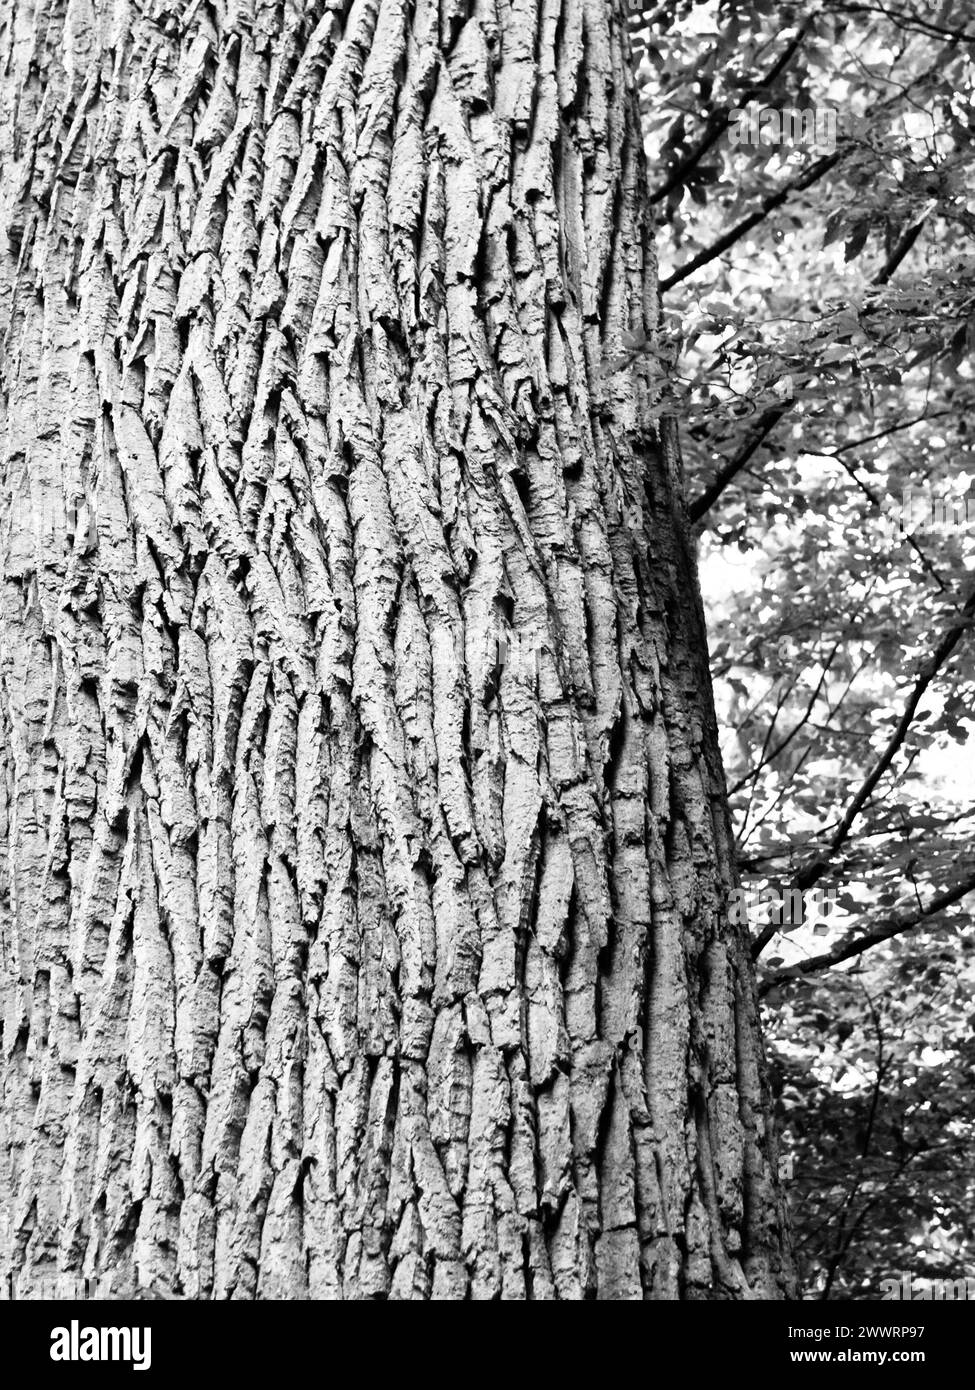 Vista dettagliata del tronco dell'albero e della corteccia dell'albero con sfondo della foresta. Immagine in bianco e nero. Foto Stock